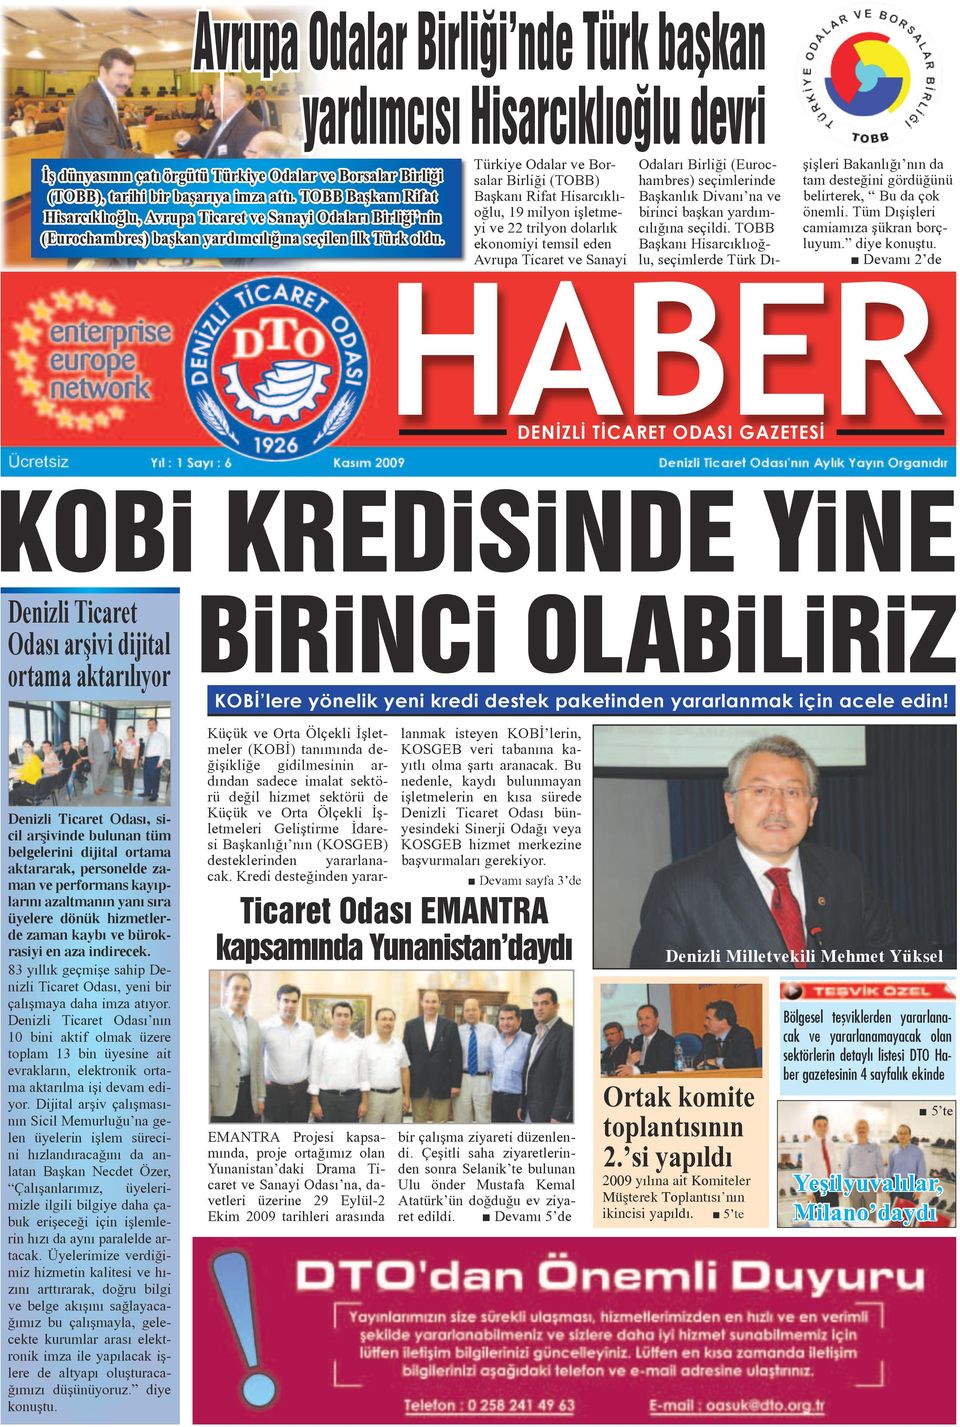 Türkiye Odalar ve Borsalar Birliği (TOBB) Başkanı Rifat Hisarcıklıoğlu, 19 milyon işletmeyi ve 22 trilyon dolarlık ekonomiyi temsil eden Avrupa Ticaret ve Sanayi Odaları Birliği (Eurochambres)